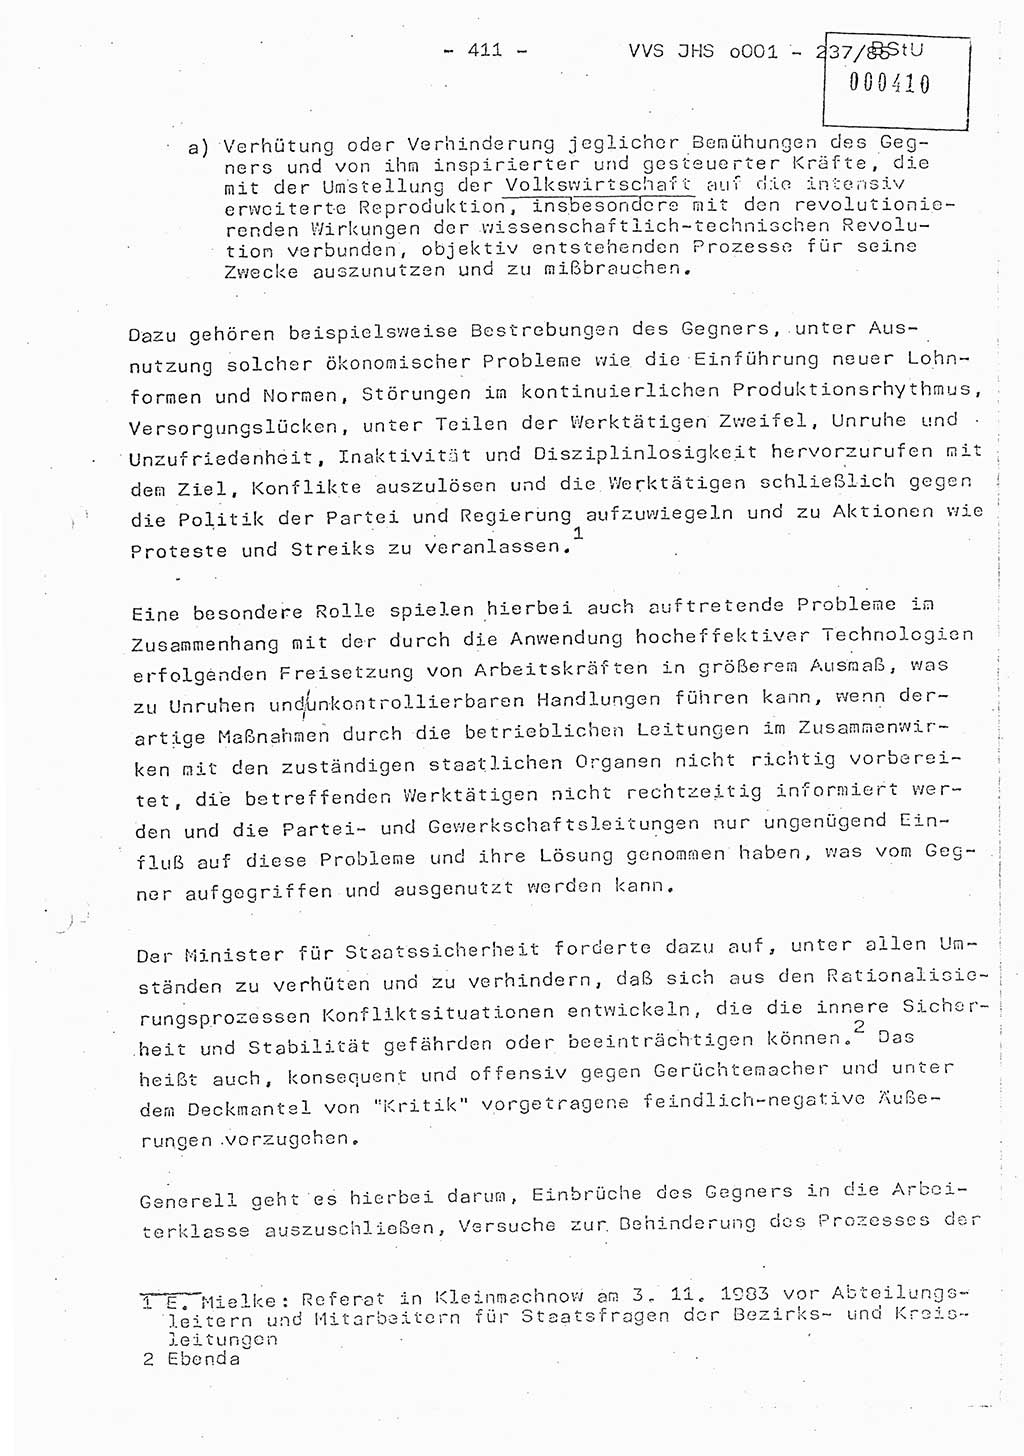 Dissertation Oberstleutnant Peter Jakulski (JHS), Oberstleutnat Christian Rudolph (HA Ⅸ), Major Horst Böttger (ZMD), Major Wolfgang Grüneberg (JHS), Major Albert Meutsch (JHS), Ministerium für Staatssicherheit (MfS) [Deutsche Demokratische Republik (DDR)], Juristische Hochschule (JHS), Vertrauliche Verschlußsache (VVS) o001-237/85, Potsdam 1985, Seite 411 (Diss. MfS DDR JHS VVS o001-237/85 1985, S. 411)